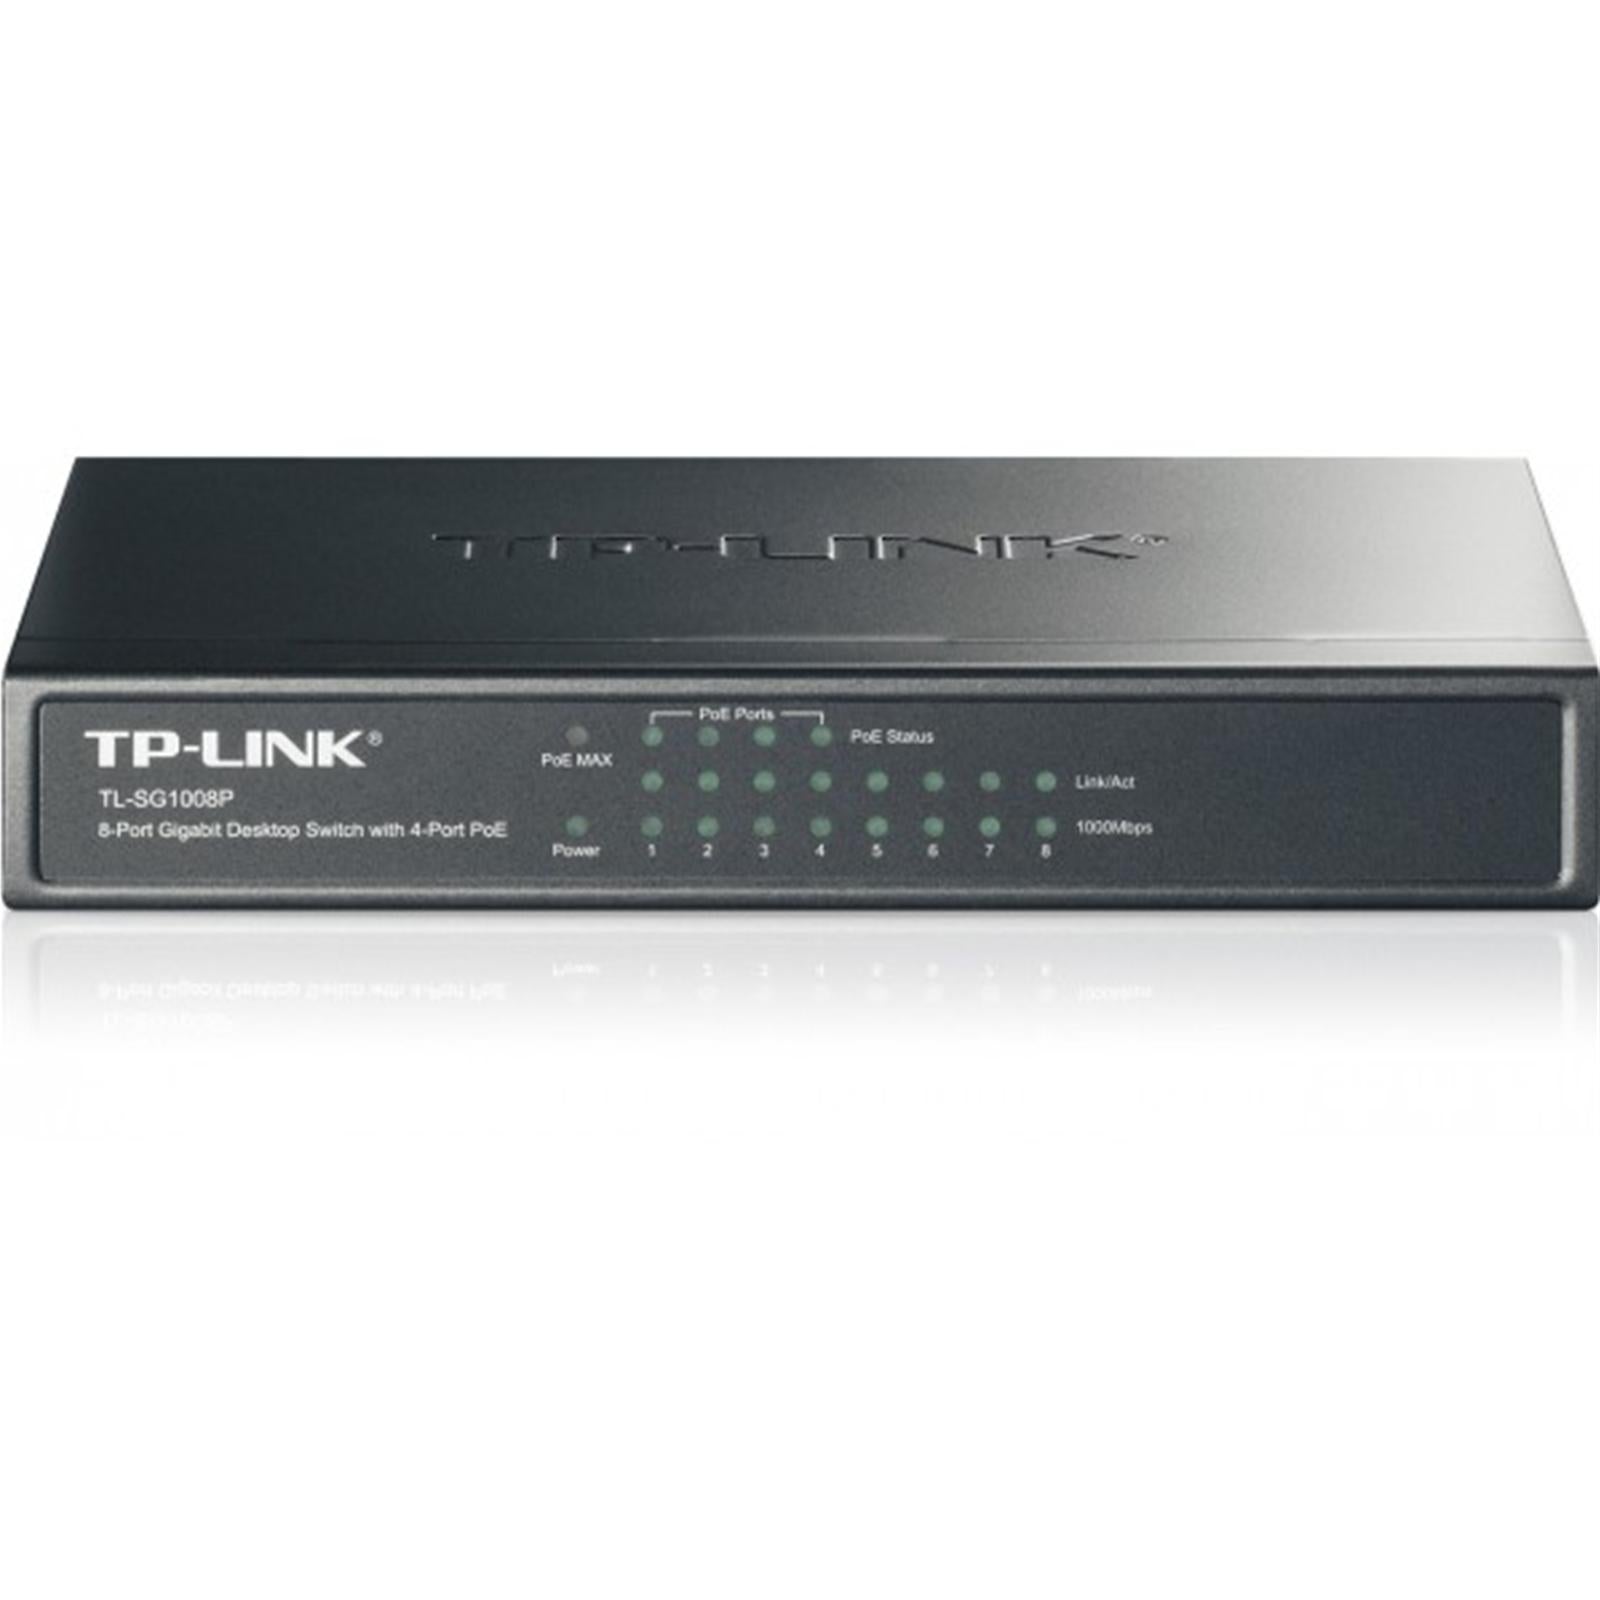 TP-Link Gigabit PoE+ Switch 8-Port Desktop Network Hub with 4 Power over Ethernet Ports